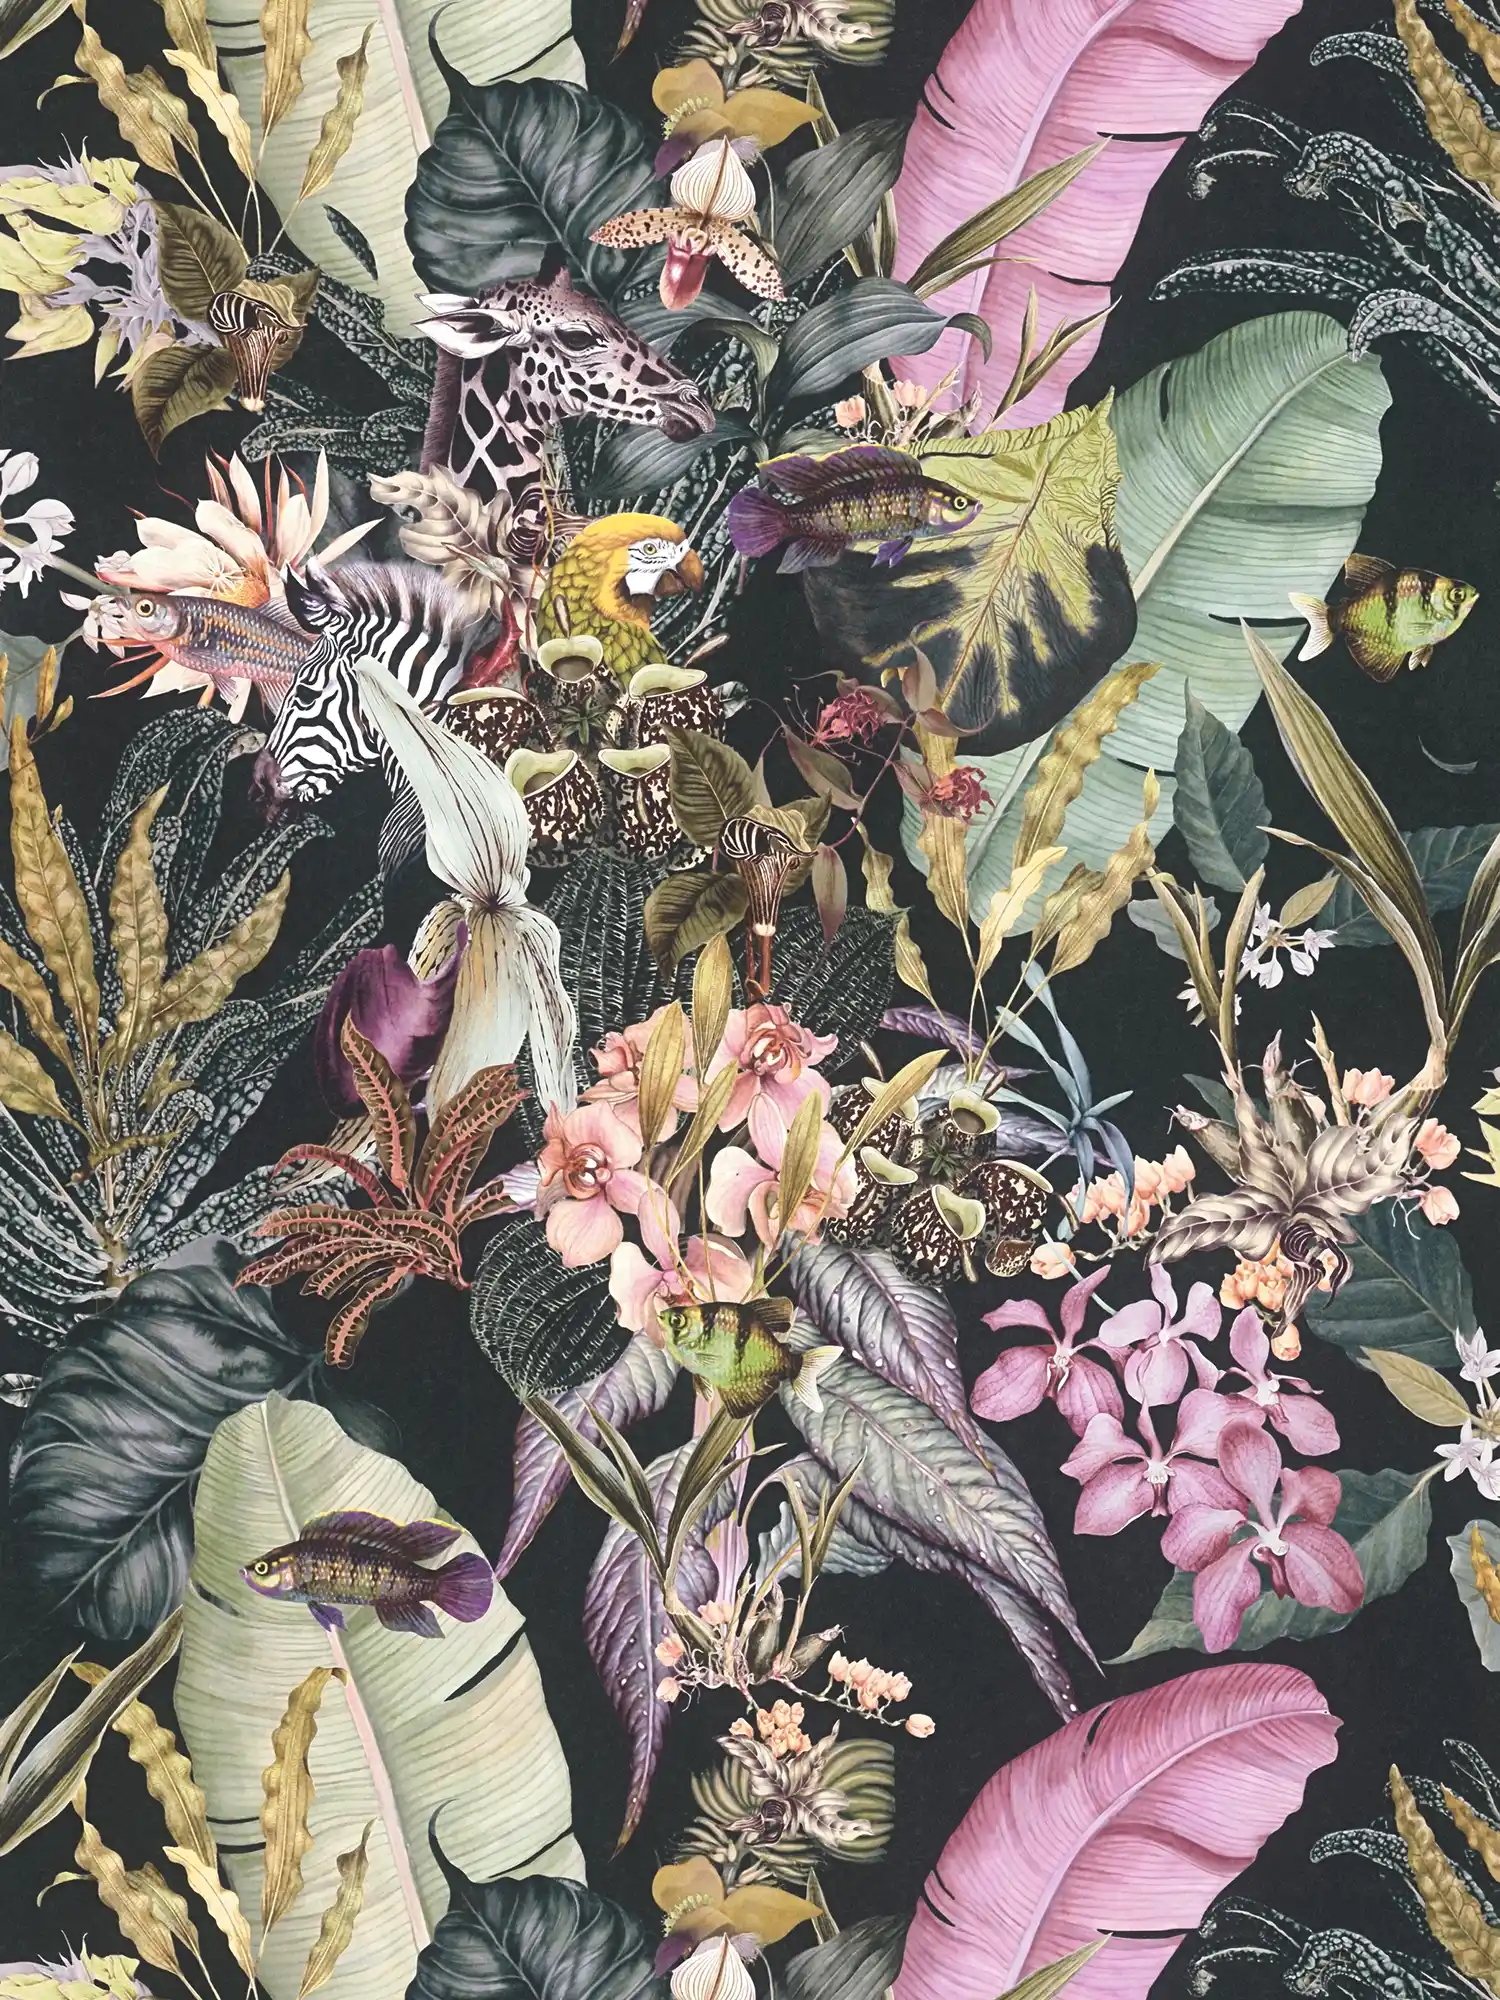         Papier peint fleuri Flora & Fauna avec fond noir
    